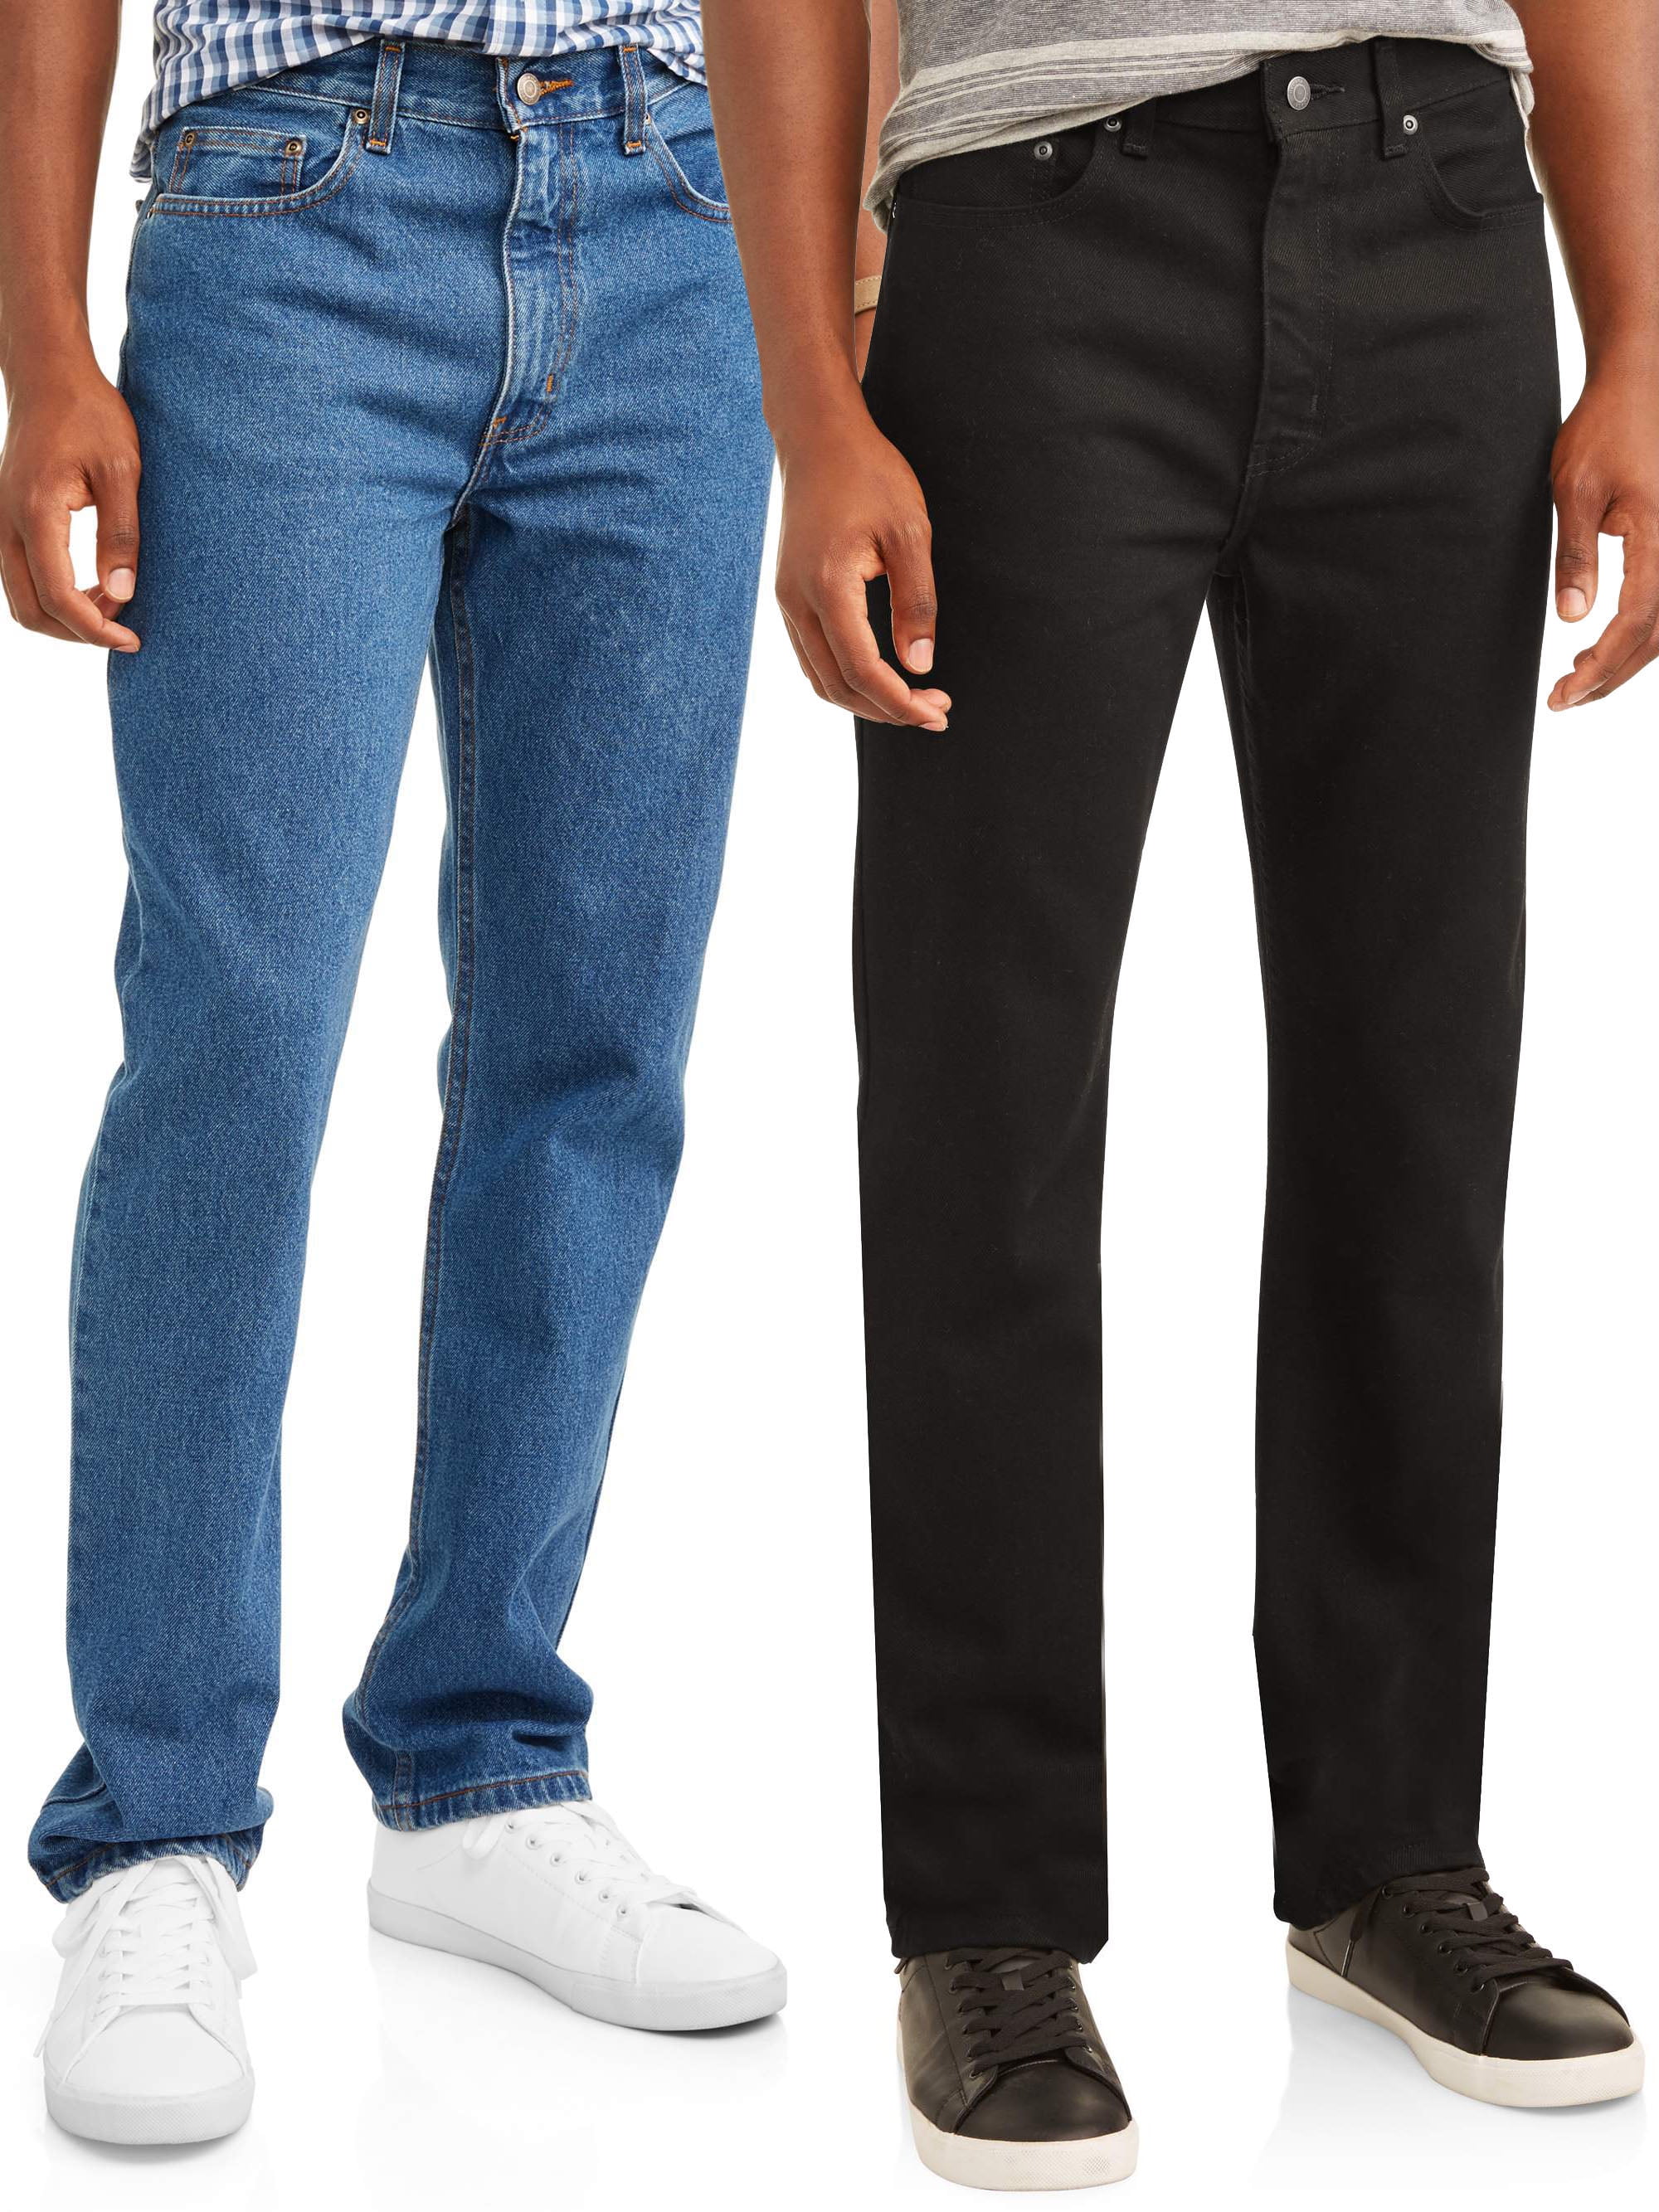 George Men's 2 Pack Bundle Regular Fit Jeans - Walmart.com